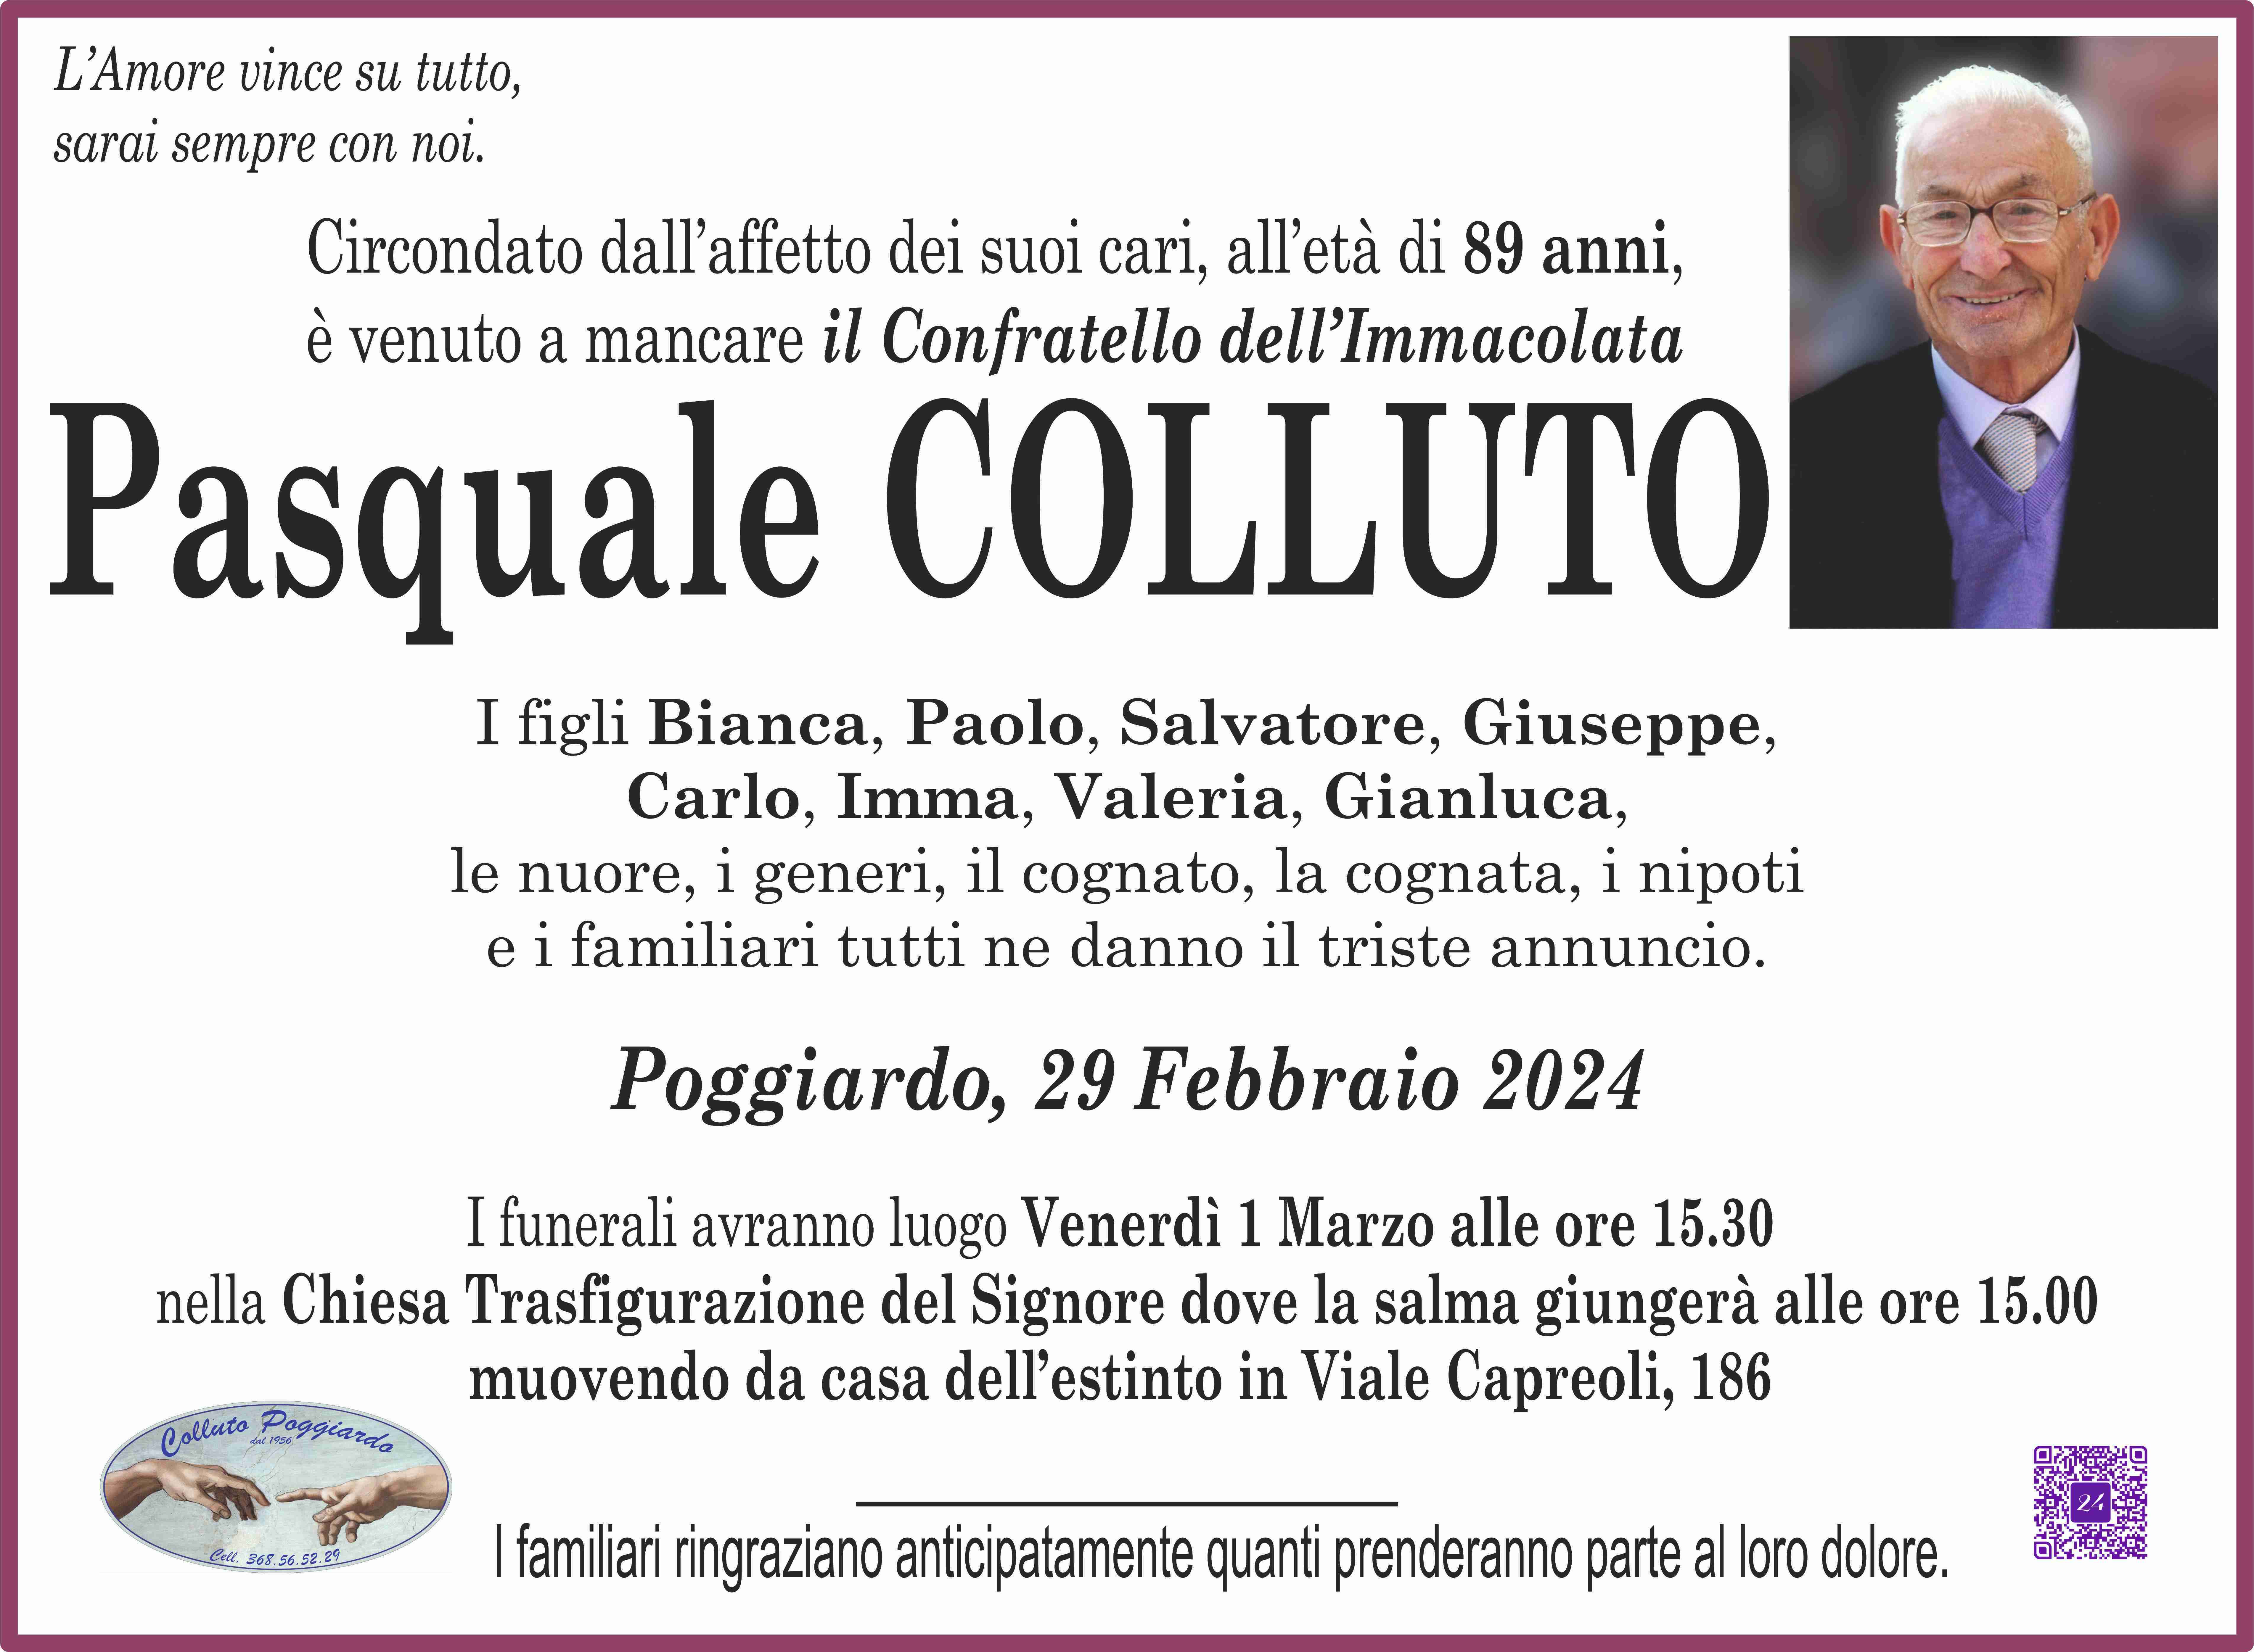 Pasquale Colluto